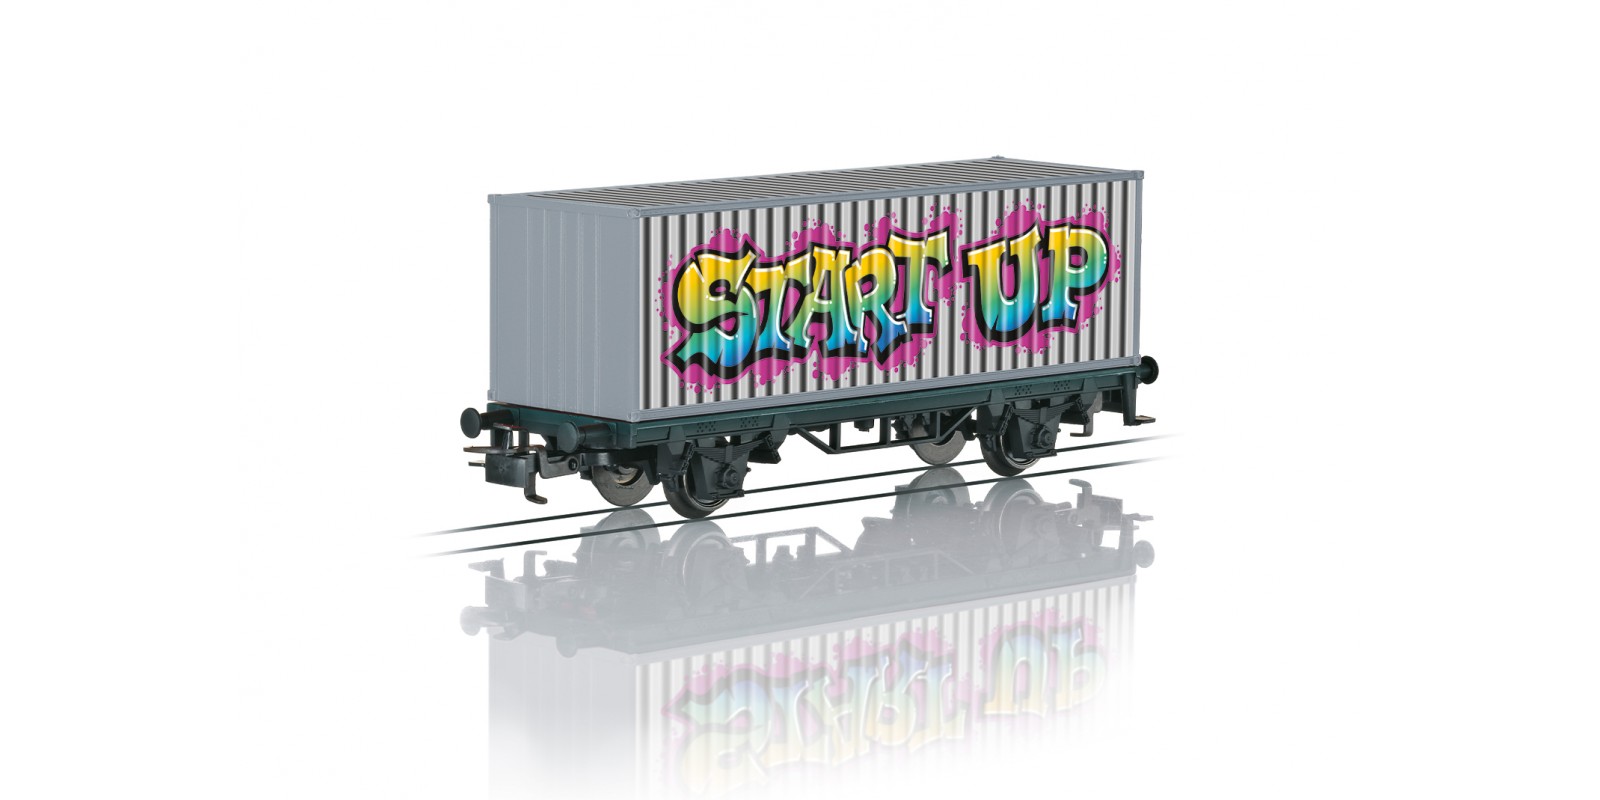 44831 Märklin Start up - Graffiti Container Transport Car